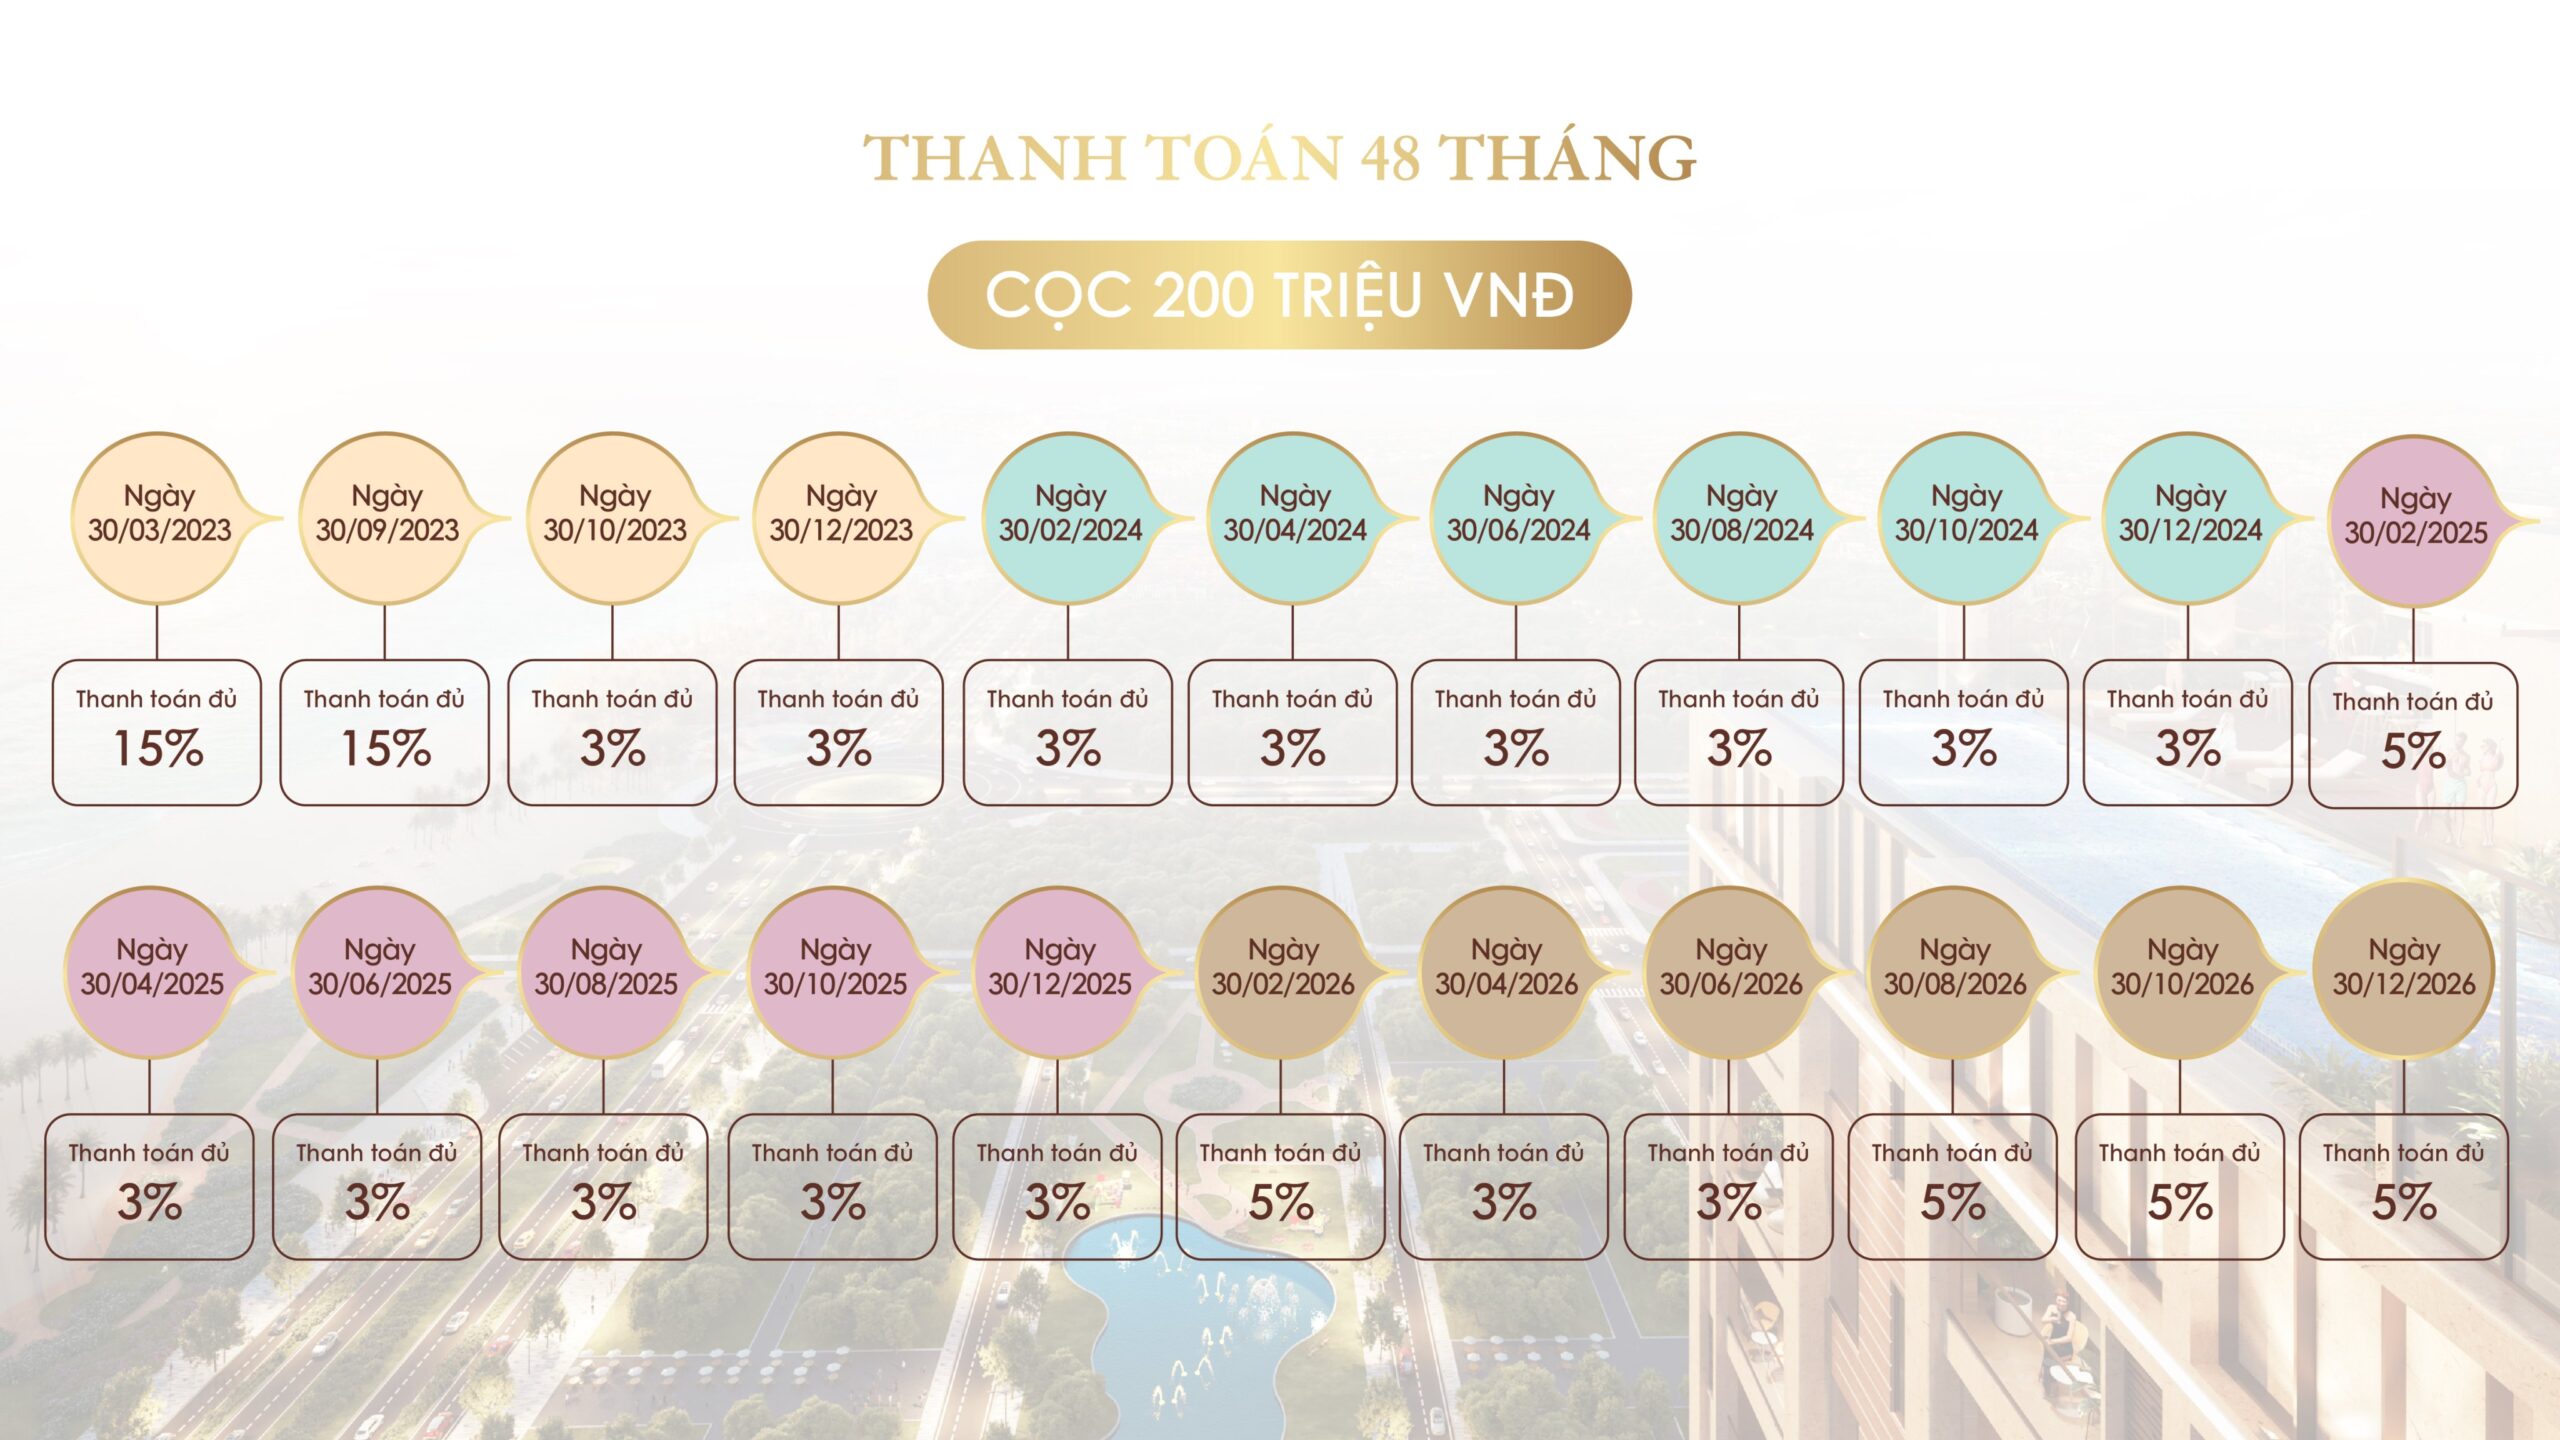 Thanh Toan 48 Thang Regal Premium